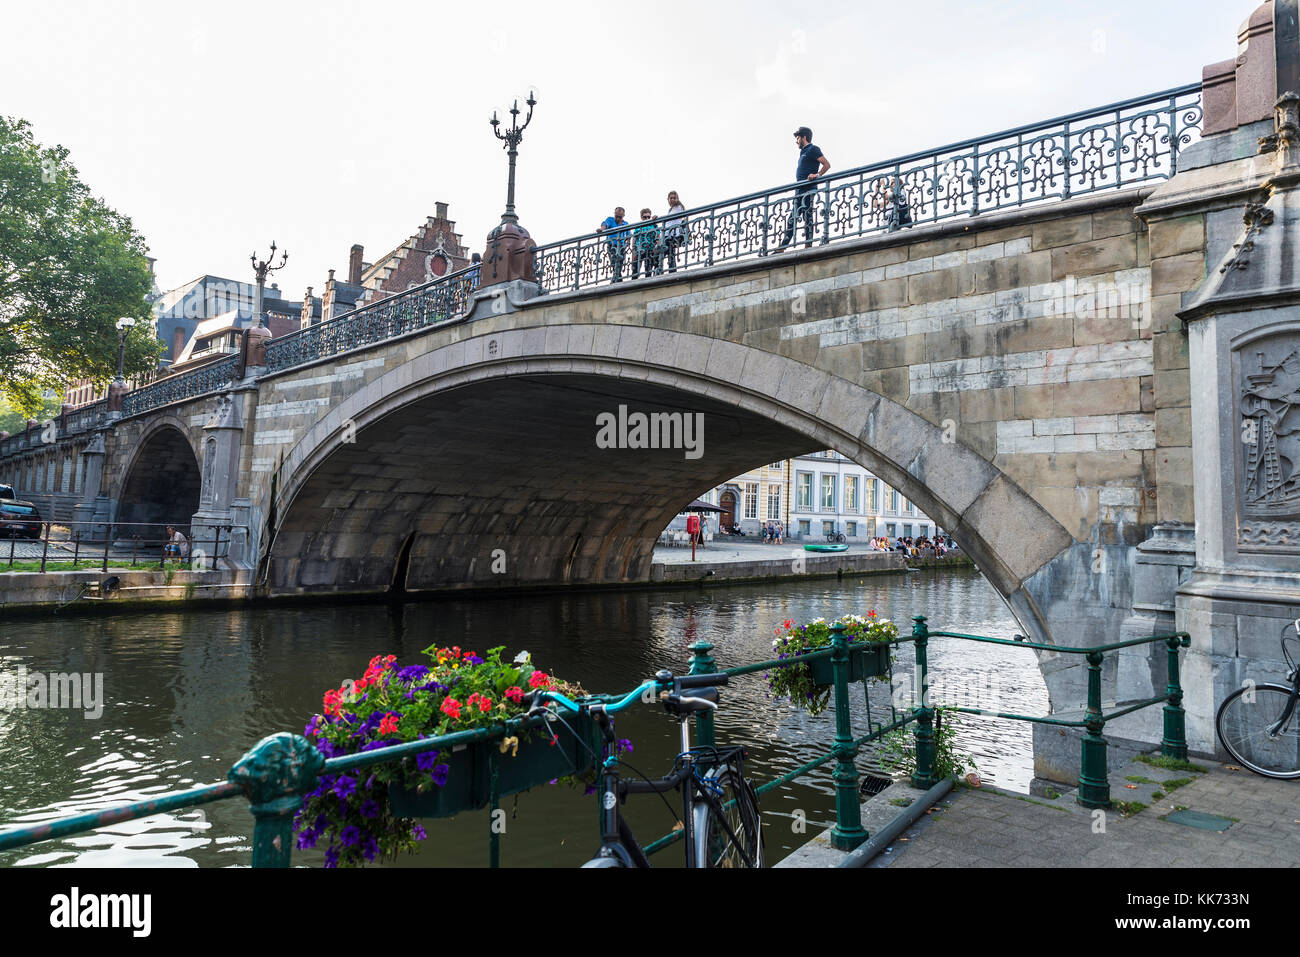 Ghent, Belgio - 28 agosto 2017: ponte di San Michele con la gente in giro per la città medievale di Gent, Belgio Foto Stock